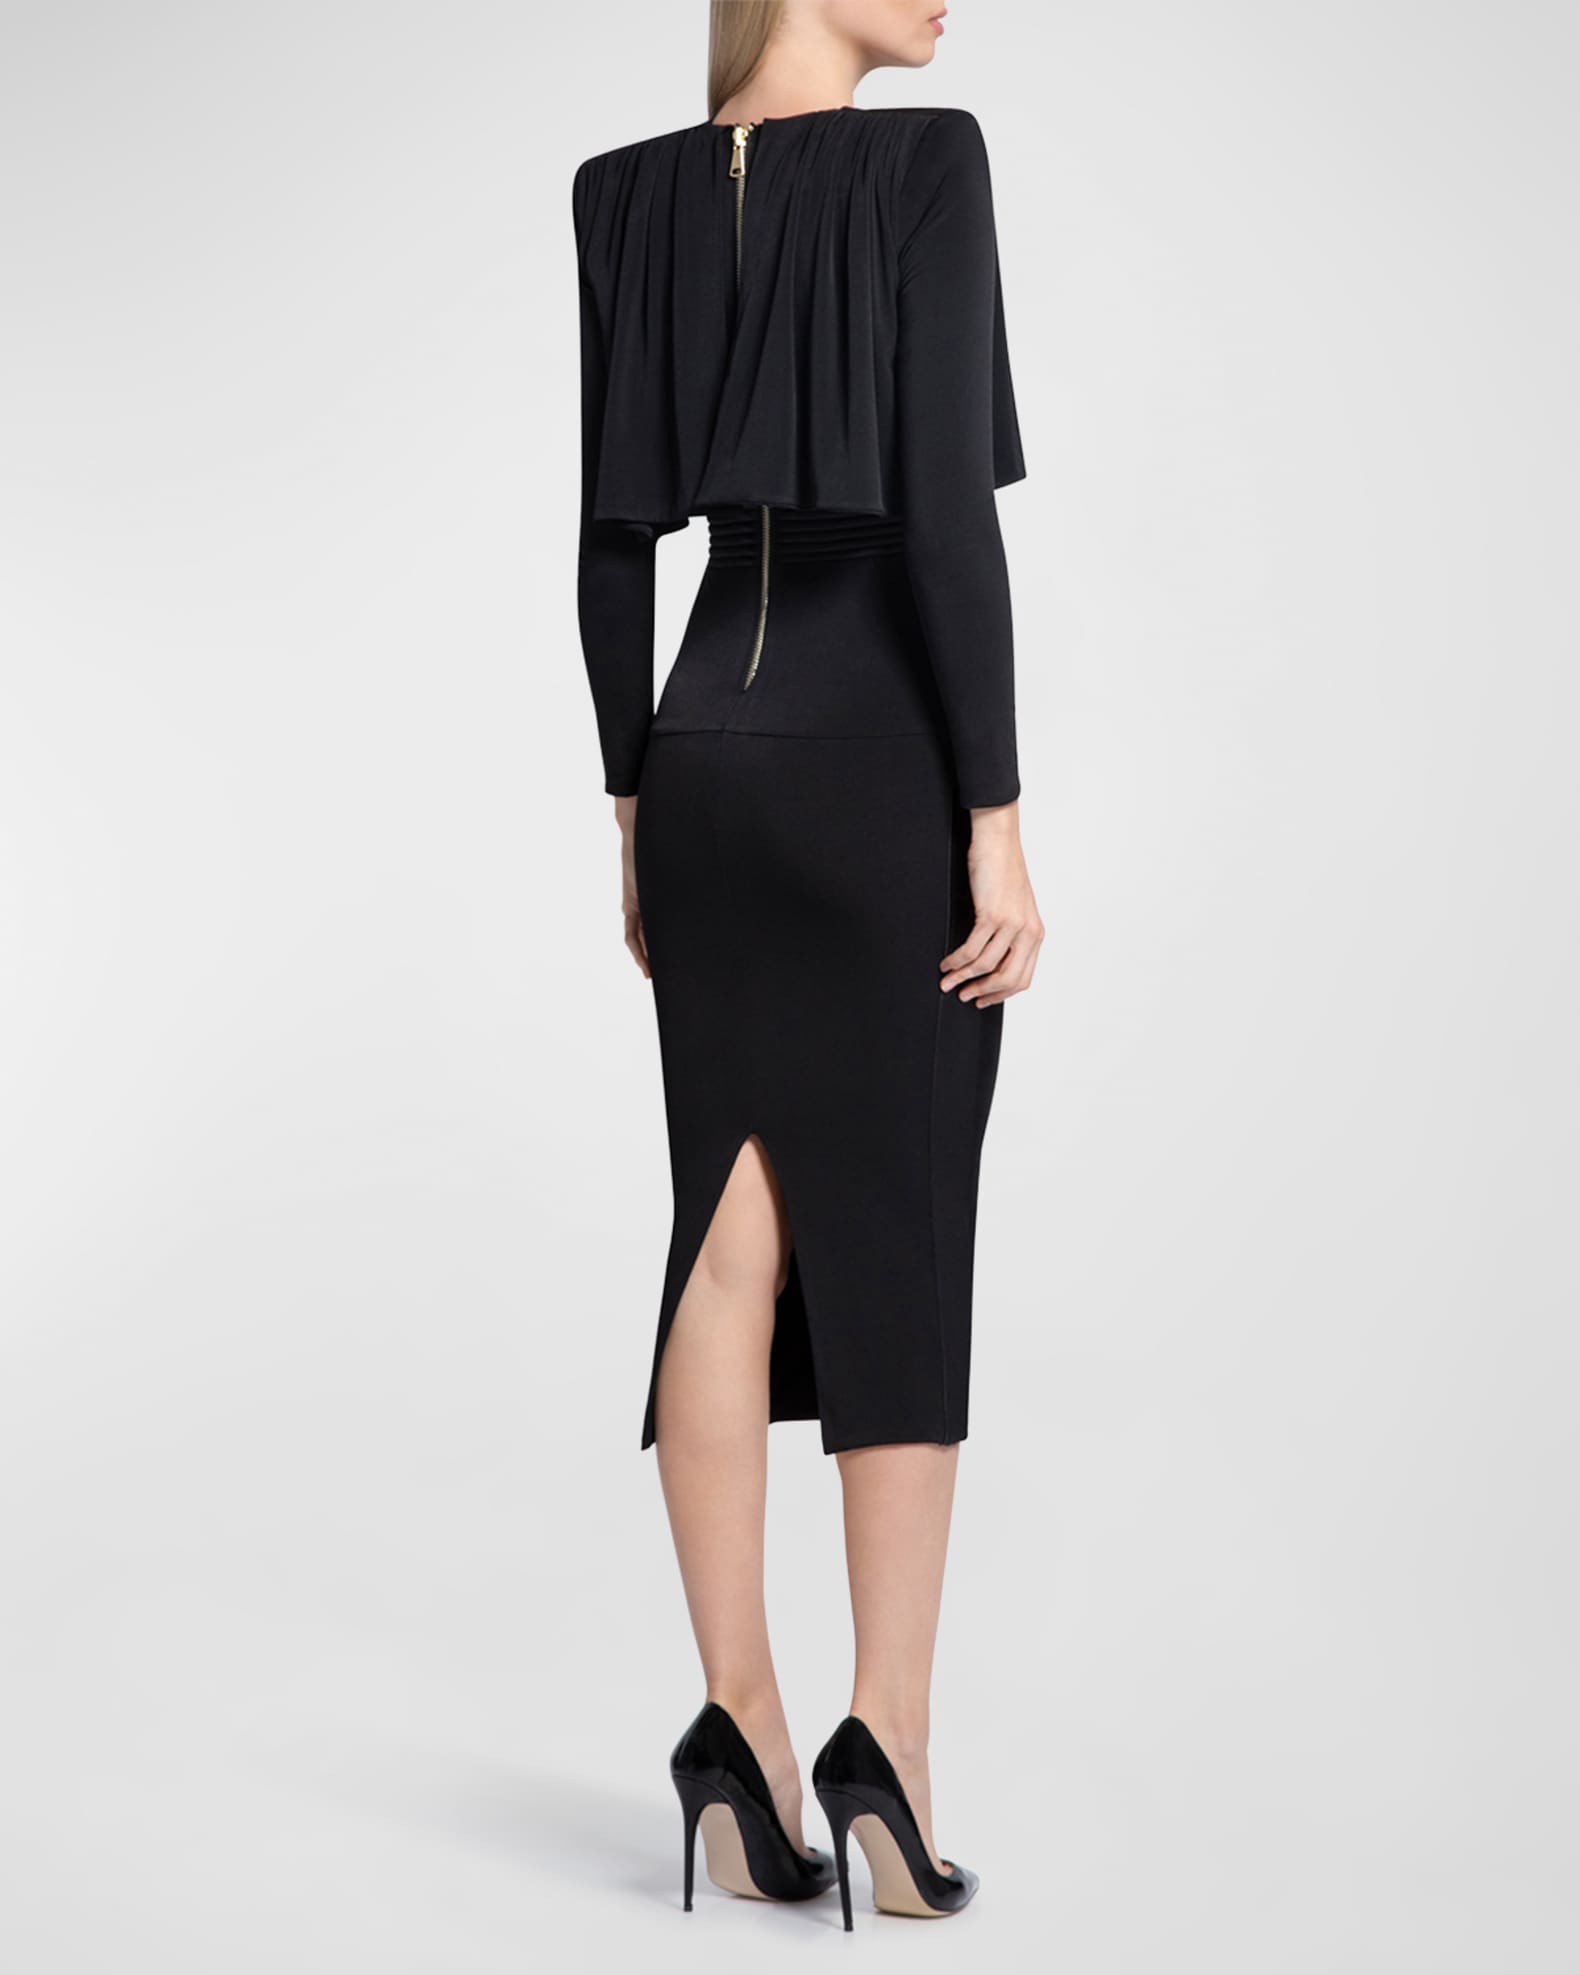 ZHIVAGO The Will Capelet Midi Dress | Neiman Marcus